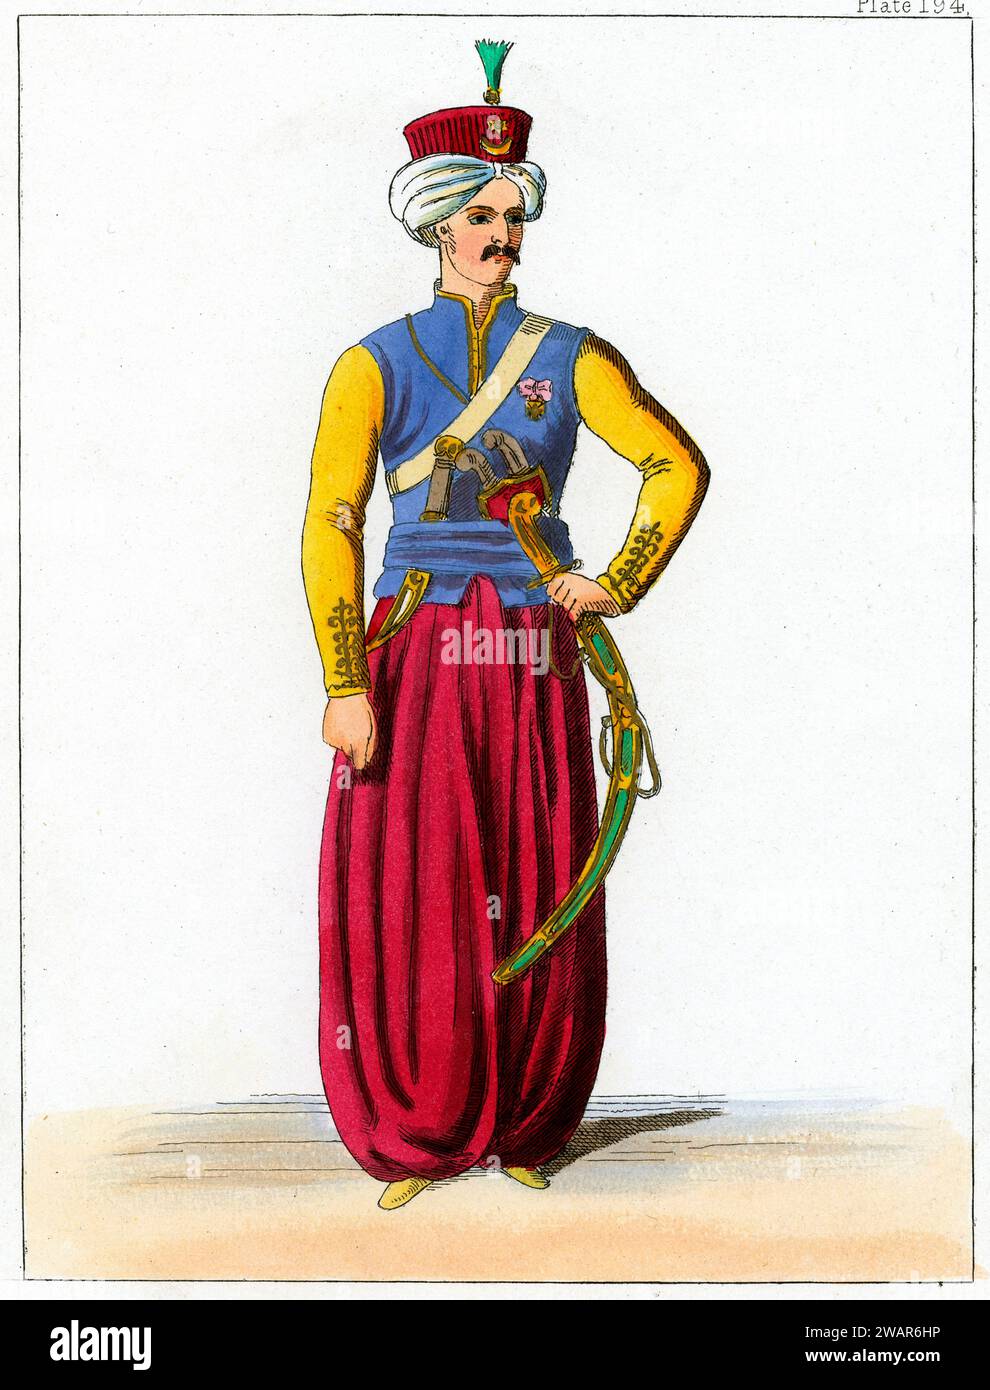 Portrait en longueur de l'officier turc ottoman dans l'armée ottomane. c19ème gravure ou illustration colorée. Banque D'Images